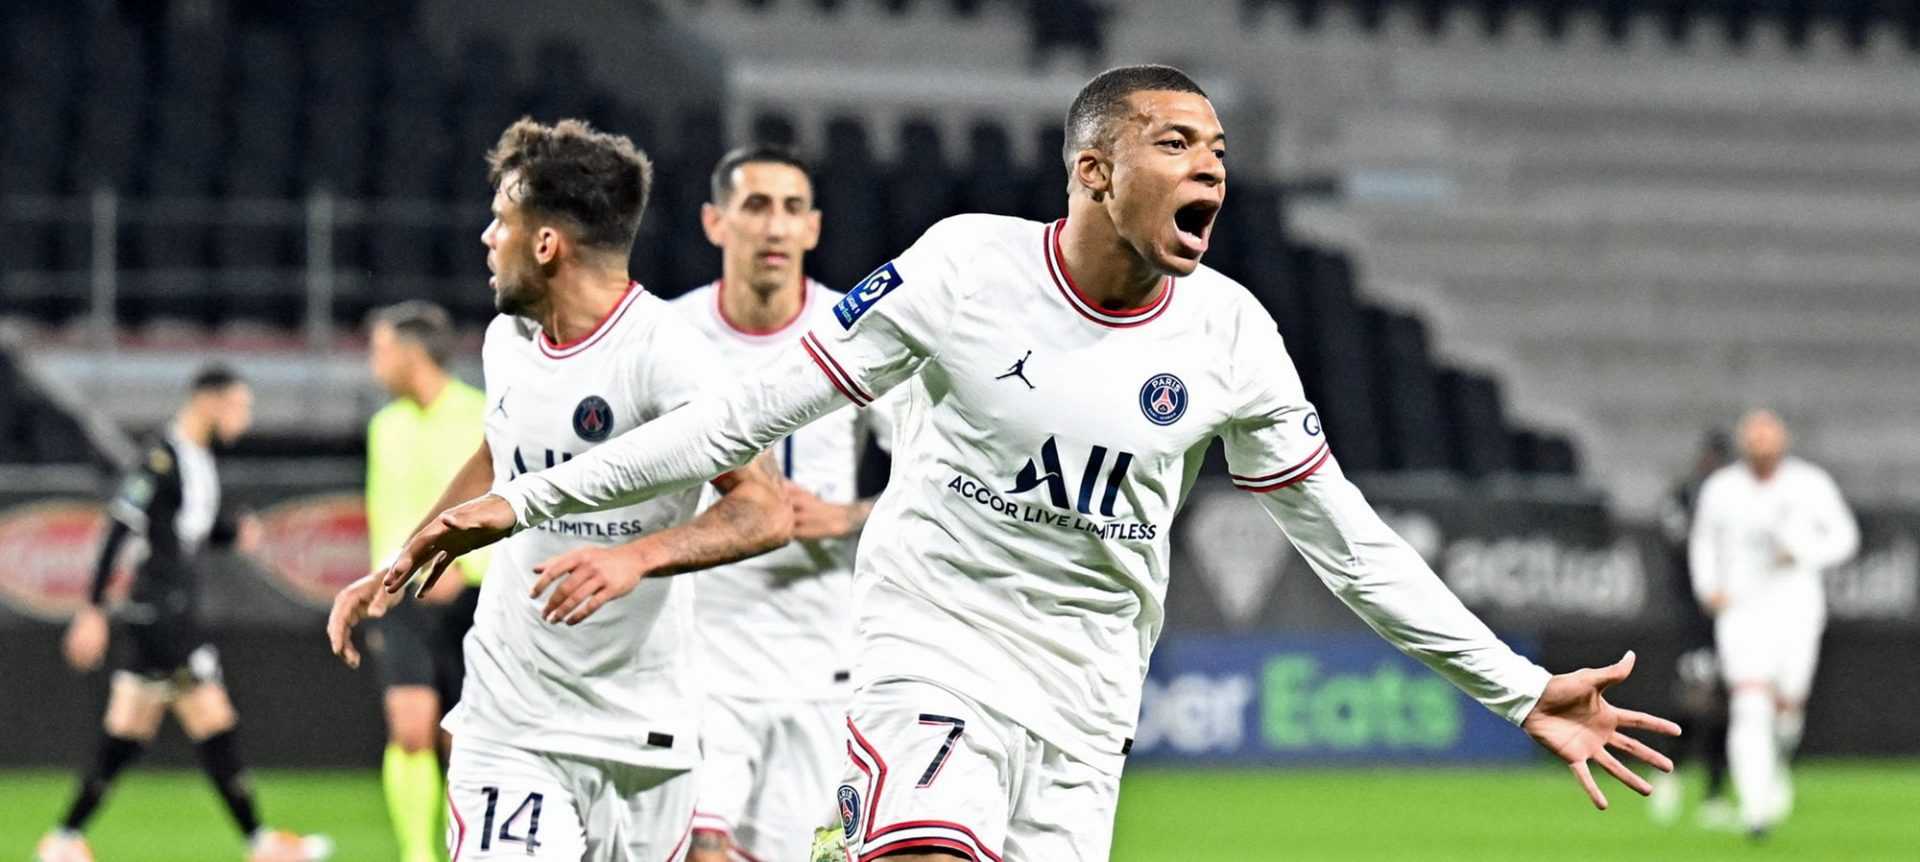 Ligue 1, giornata 33: Lille e Lione vanno ko, favola Strasburgo